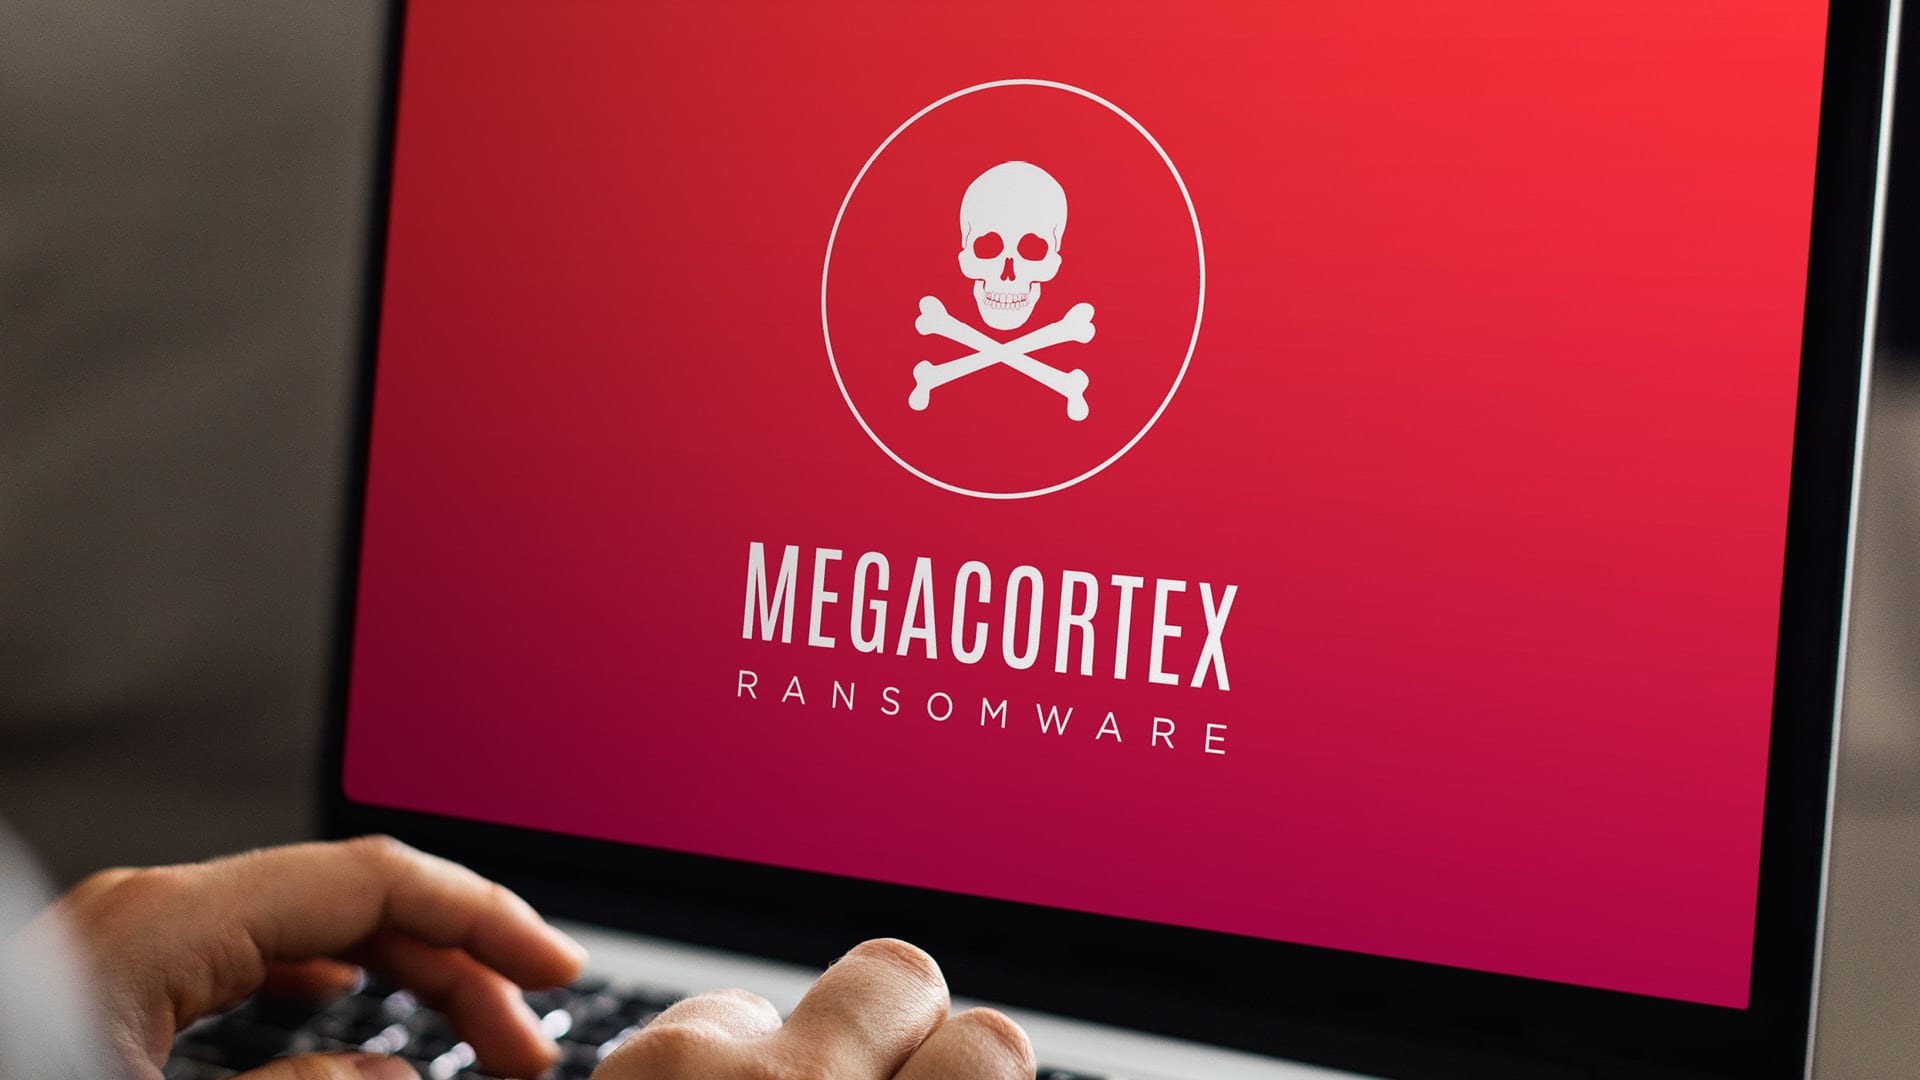 Megacortex endrer passord i Windows